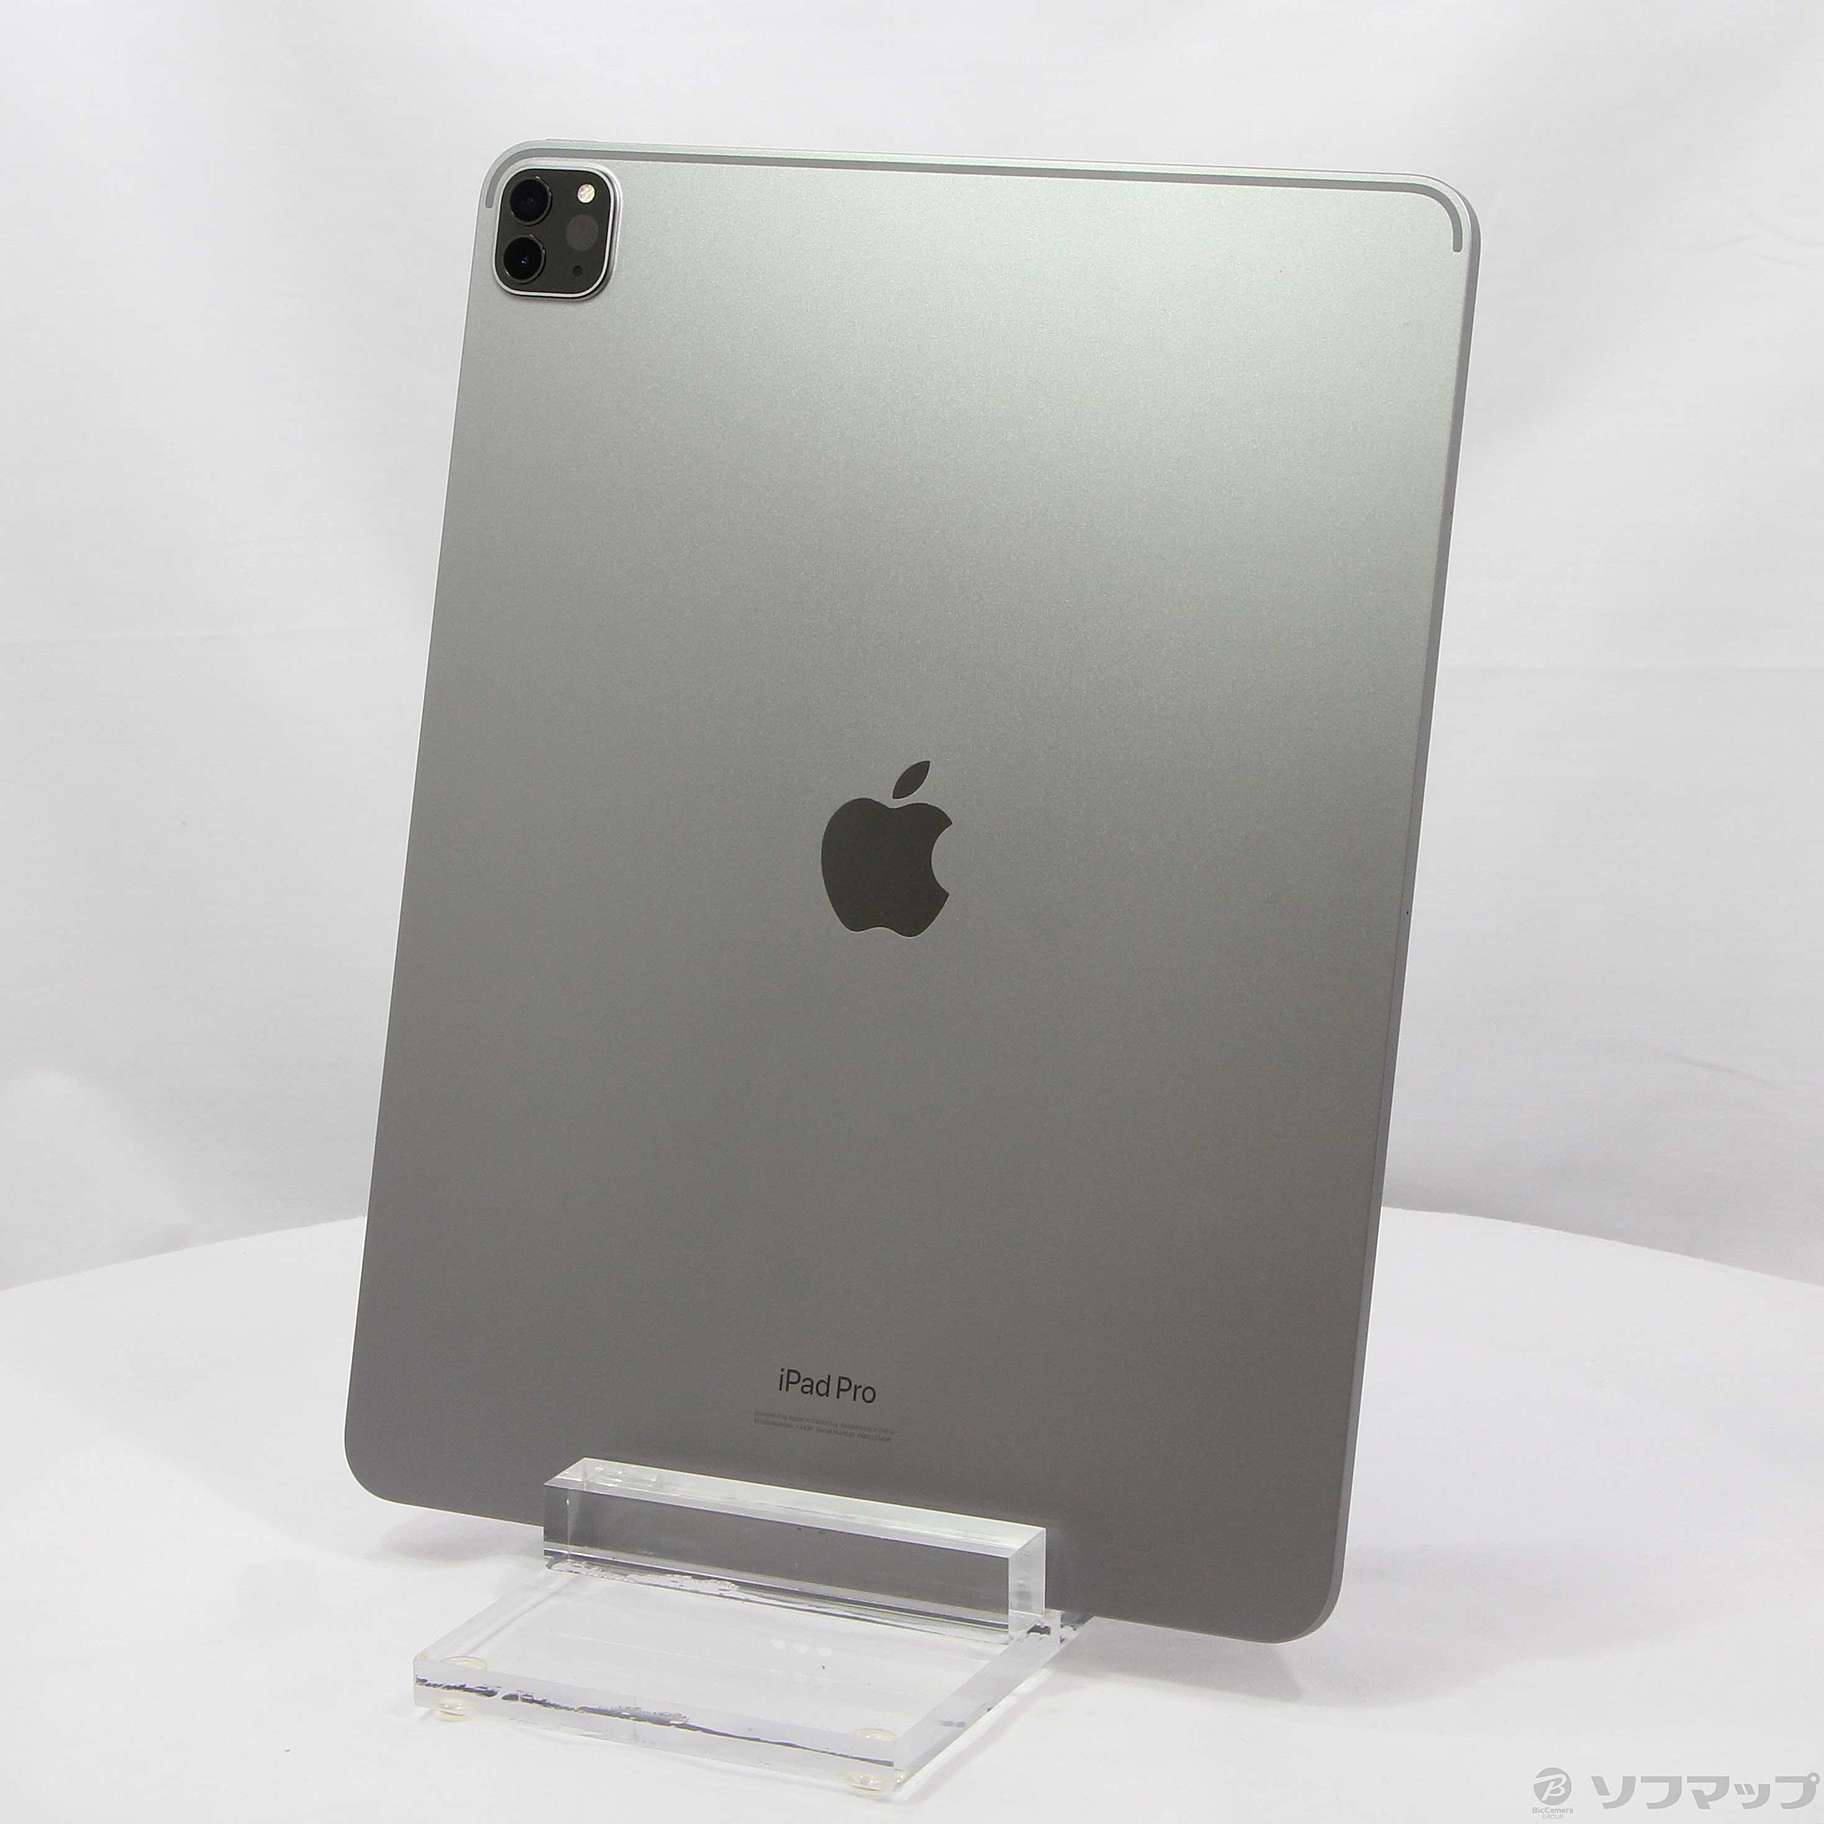 日本製お得iPad Pro 12.9インチ 256GB グレイ MHNH3J/A 新品 タブレット